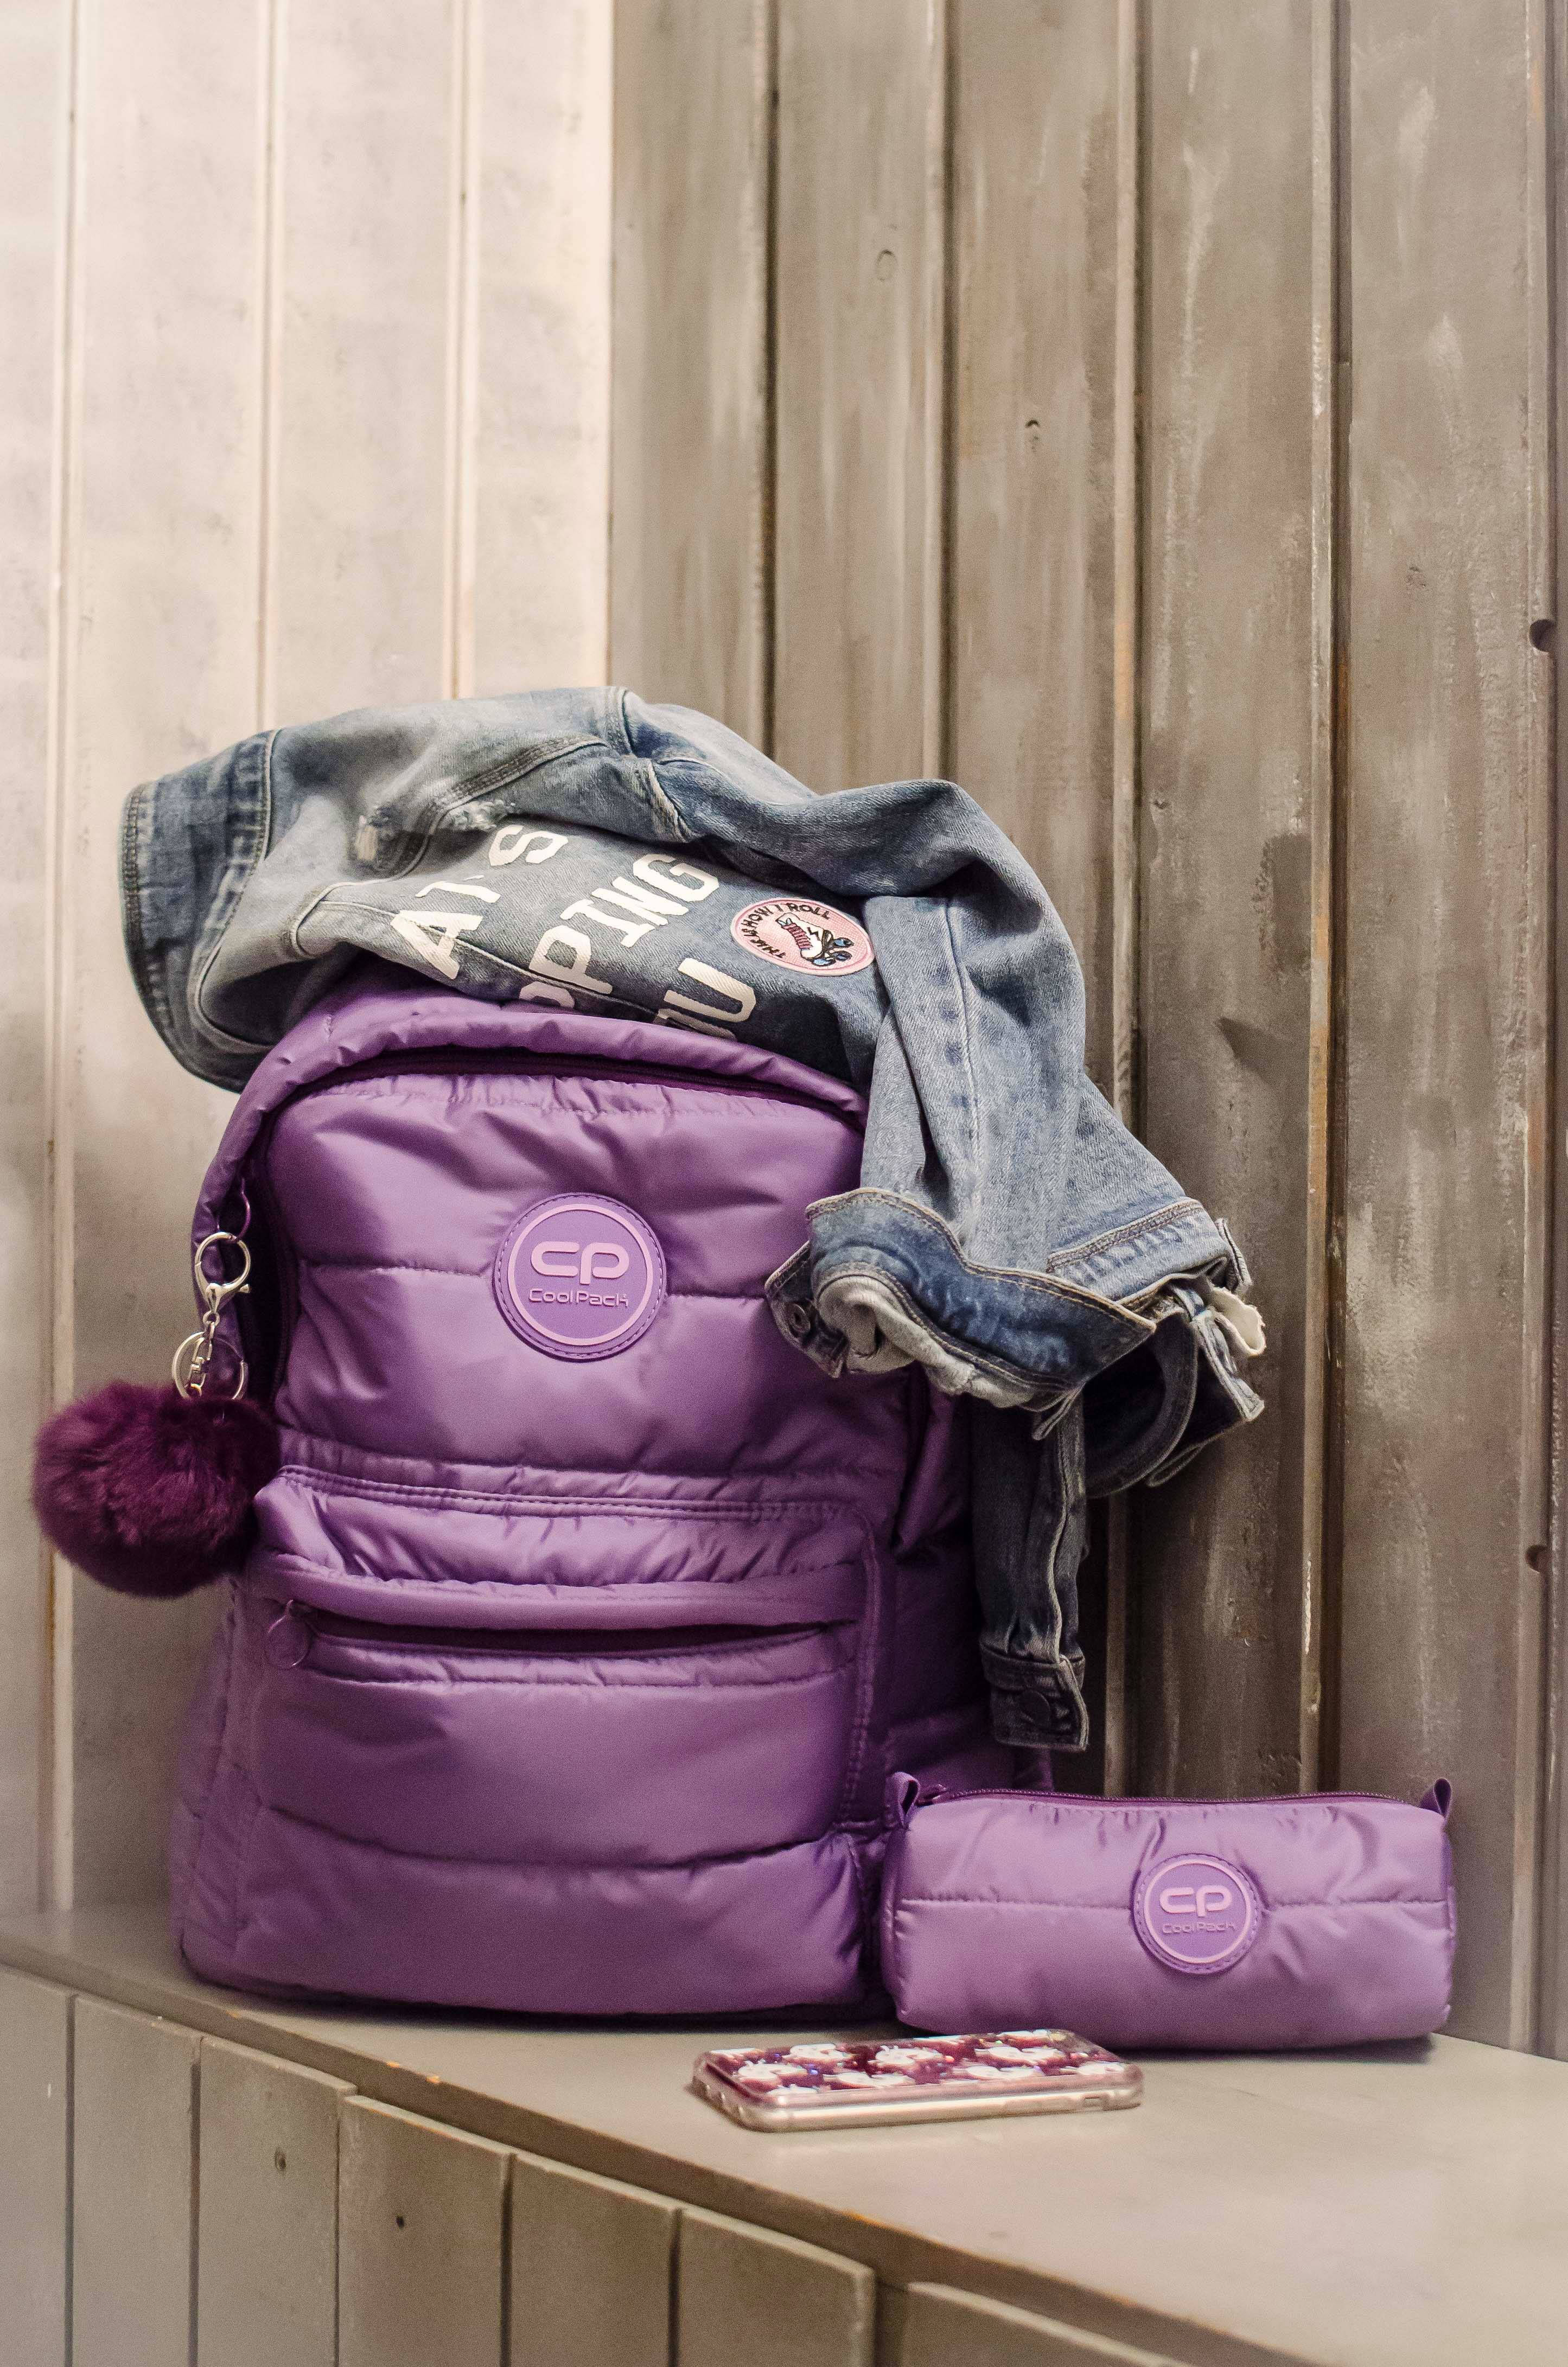 Plecak miejski puchowy pikowany fioletowy z pomponem coolpack 2018 nowa kolekcja plecaków 